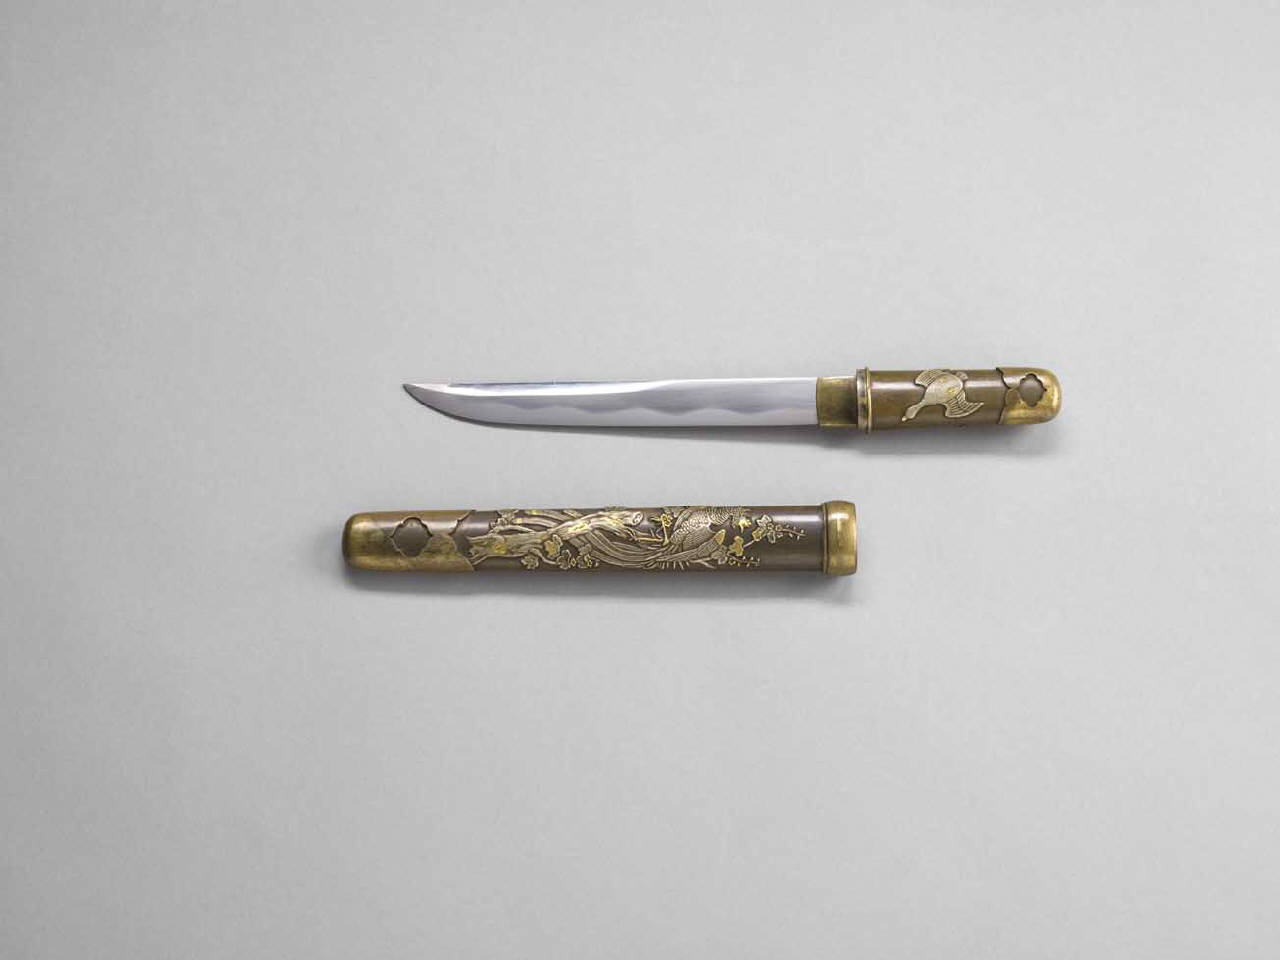 paulonia e uccelli (pugnale) - manifattura giapponese (sec. XIX)